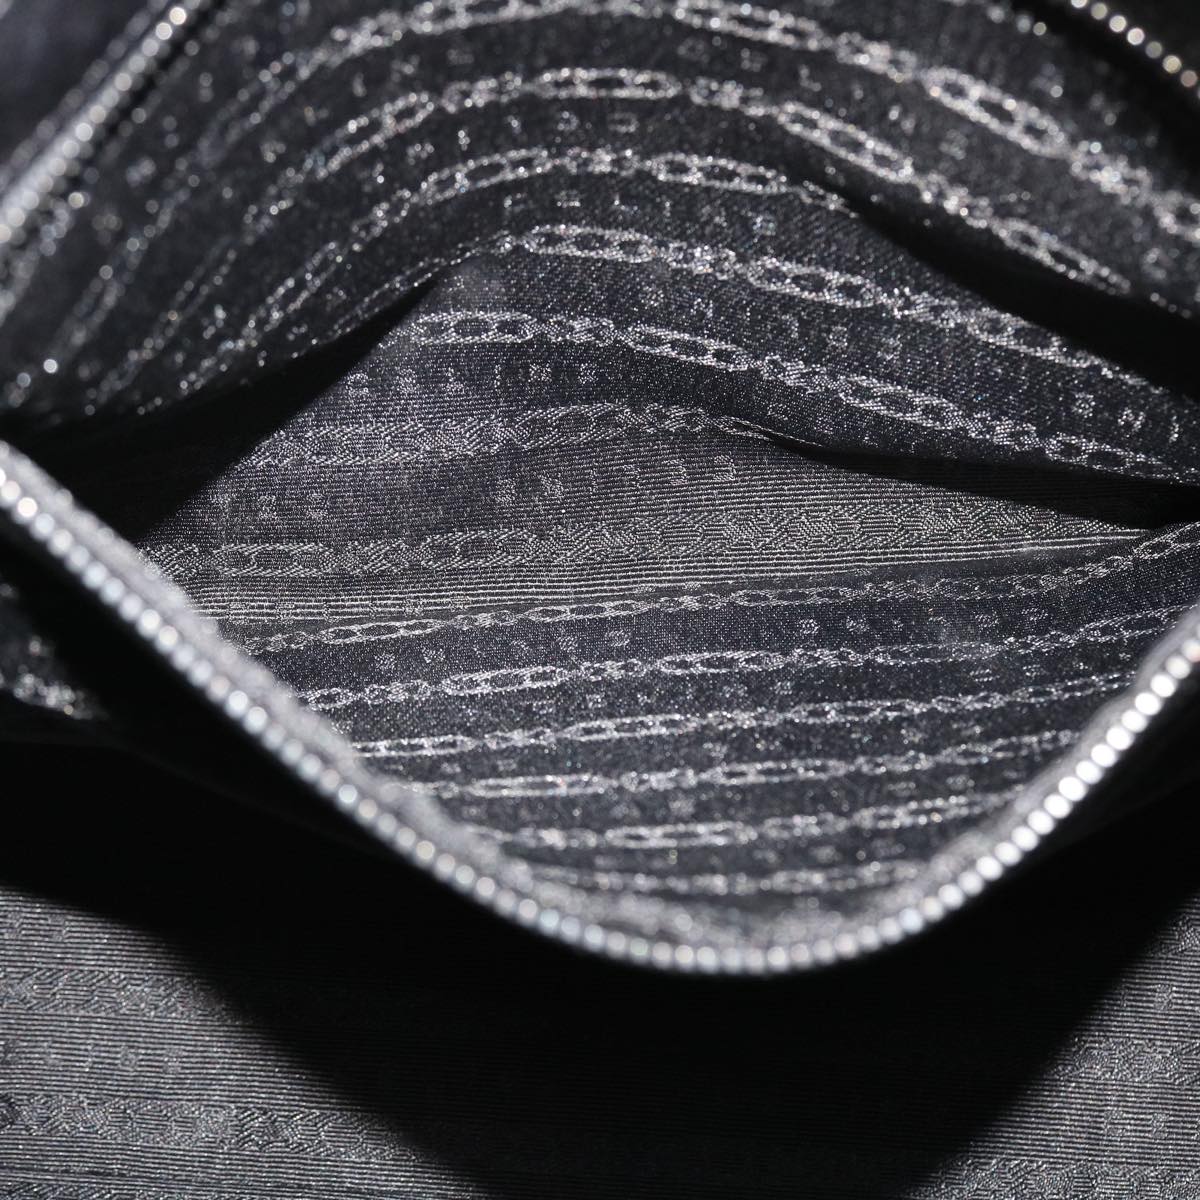 CELINE Shoulder Bag Leather Black Auth 38040